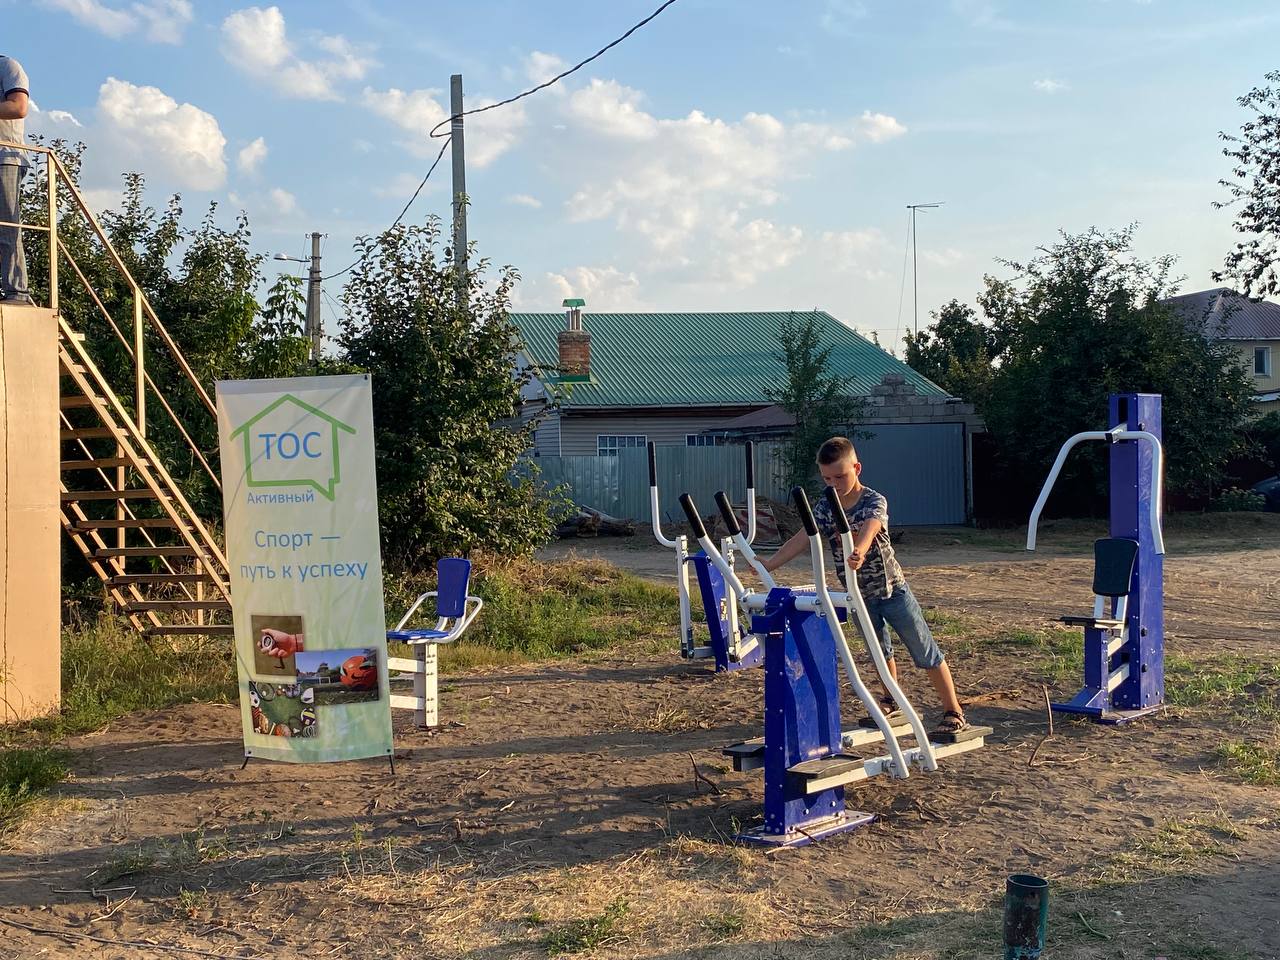 Активный отдых во дворе: на территории заволжского ТОС открылась спортплощадка.